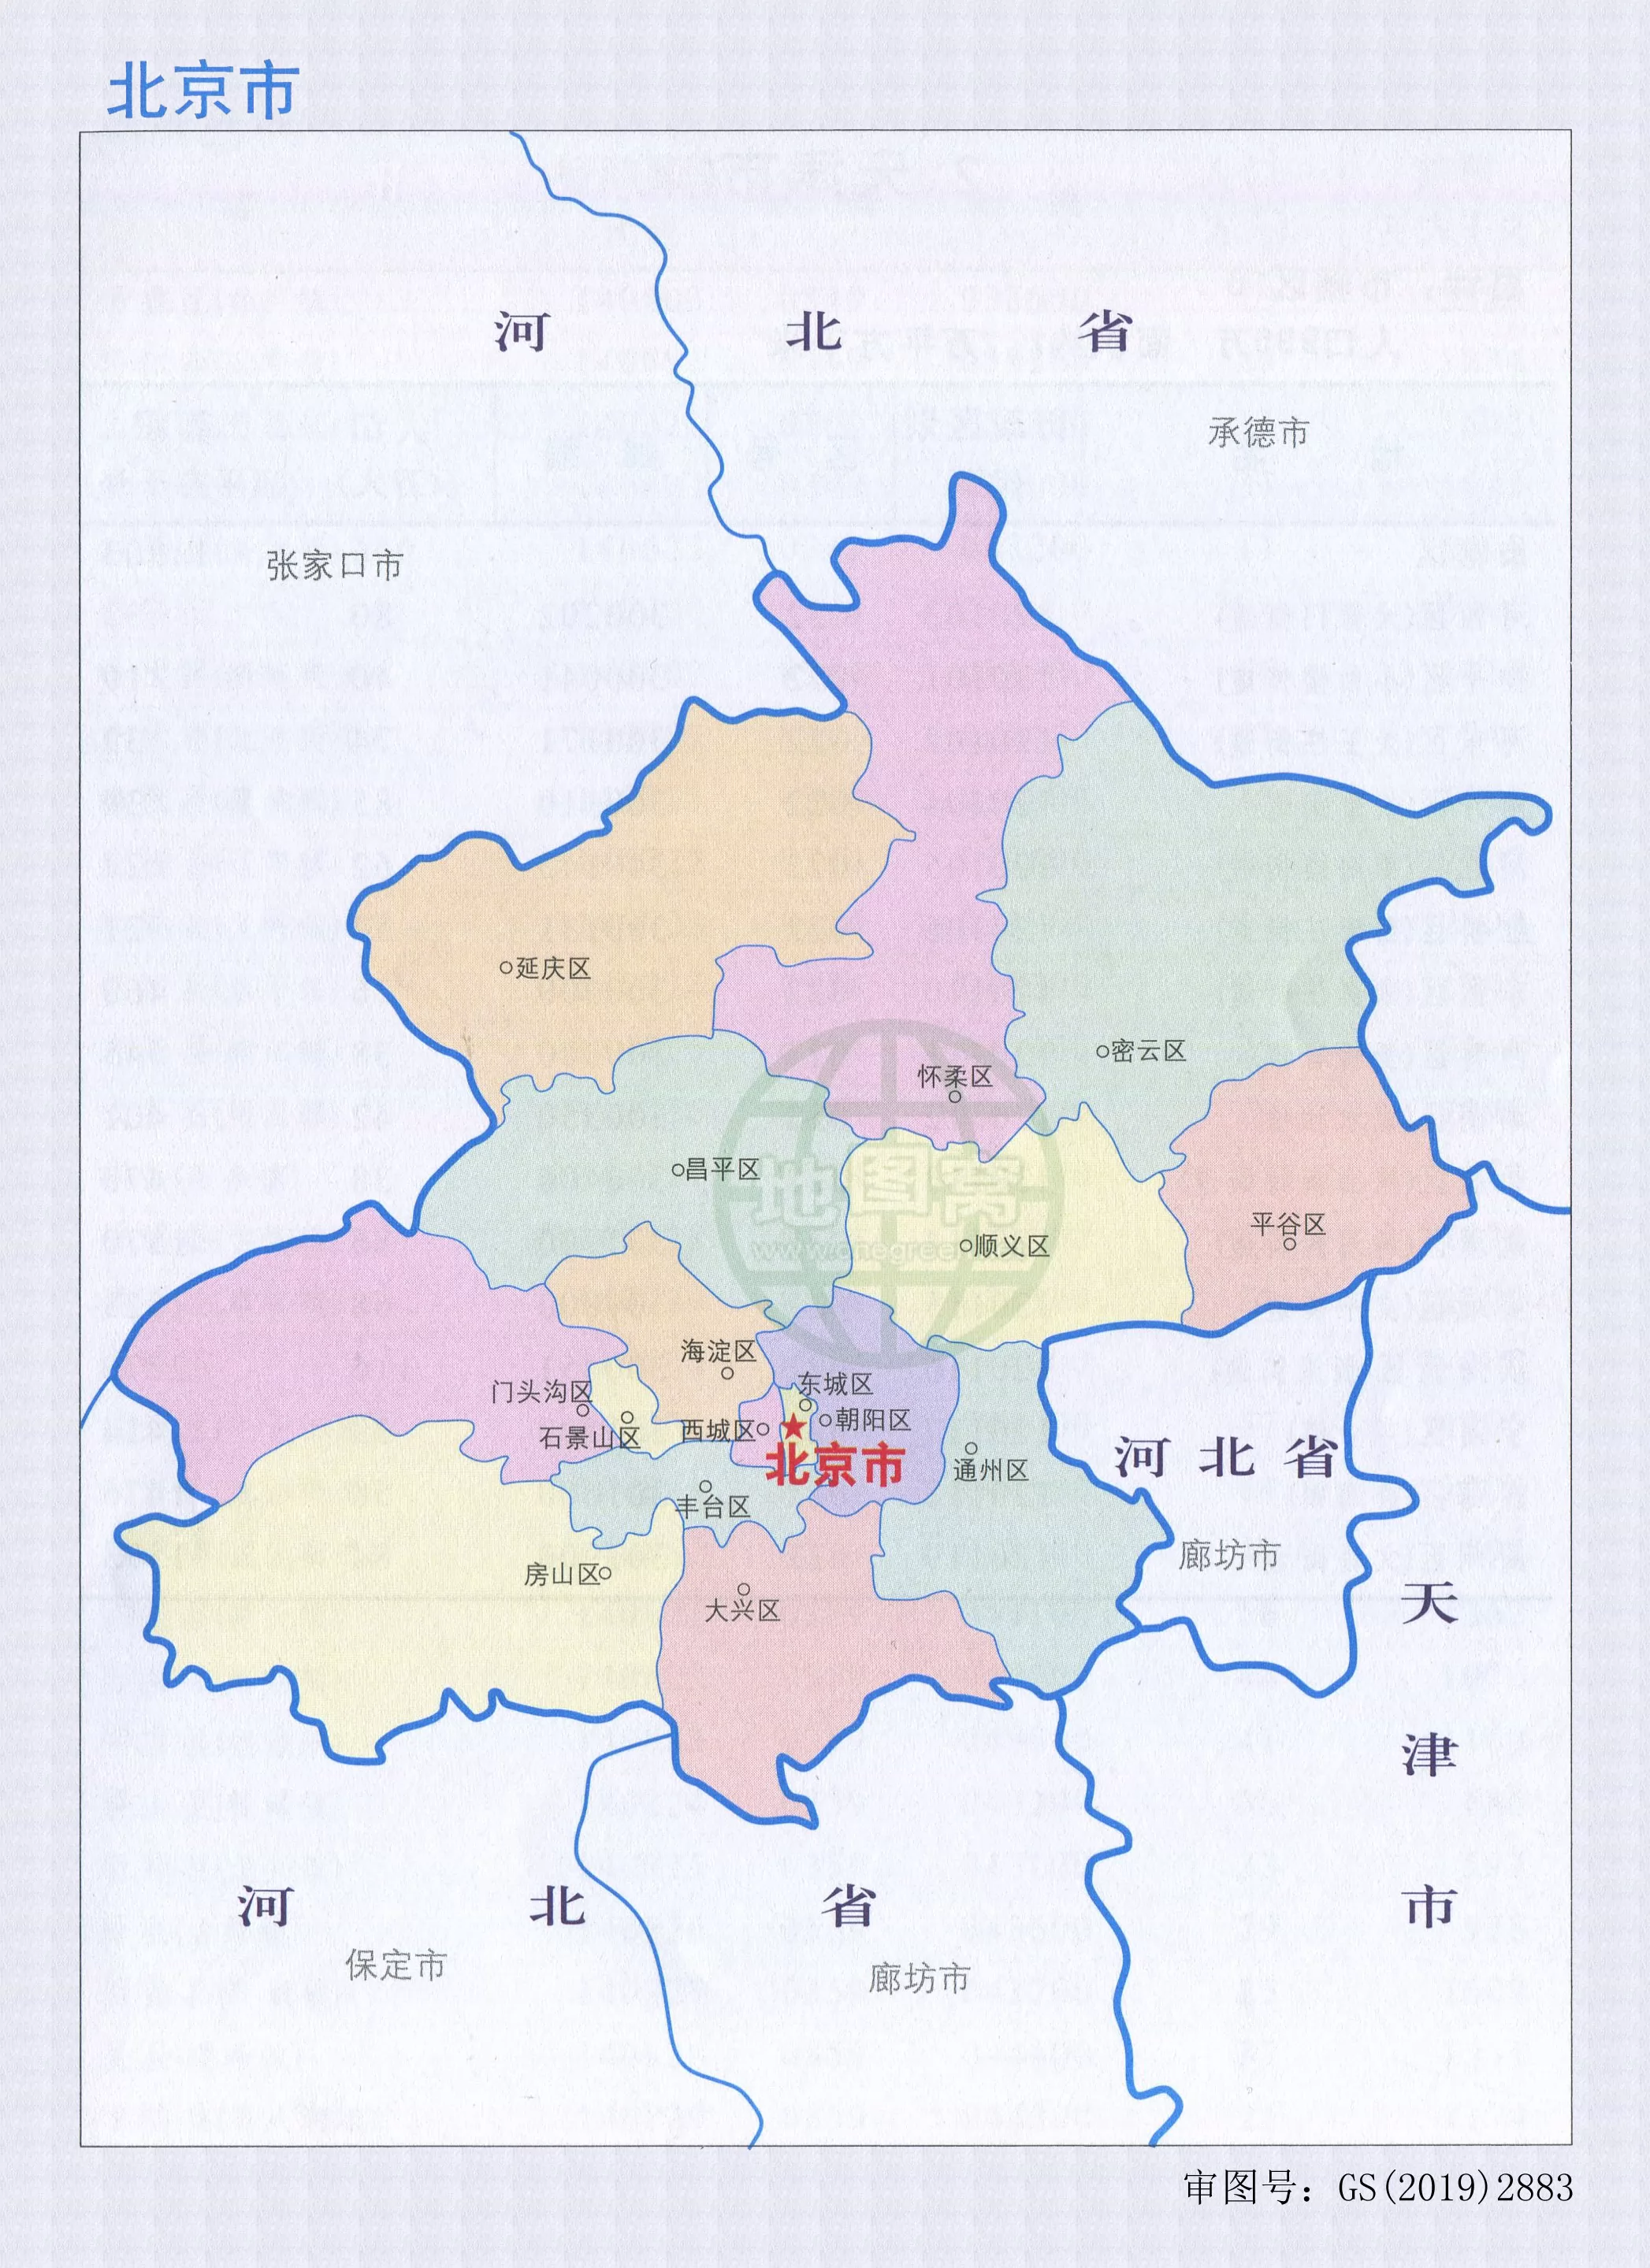 北京地图,北京地图查询,北京地图全图 - 中国地图全图 - 地理教师网